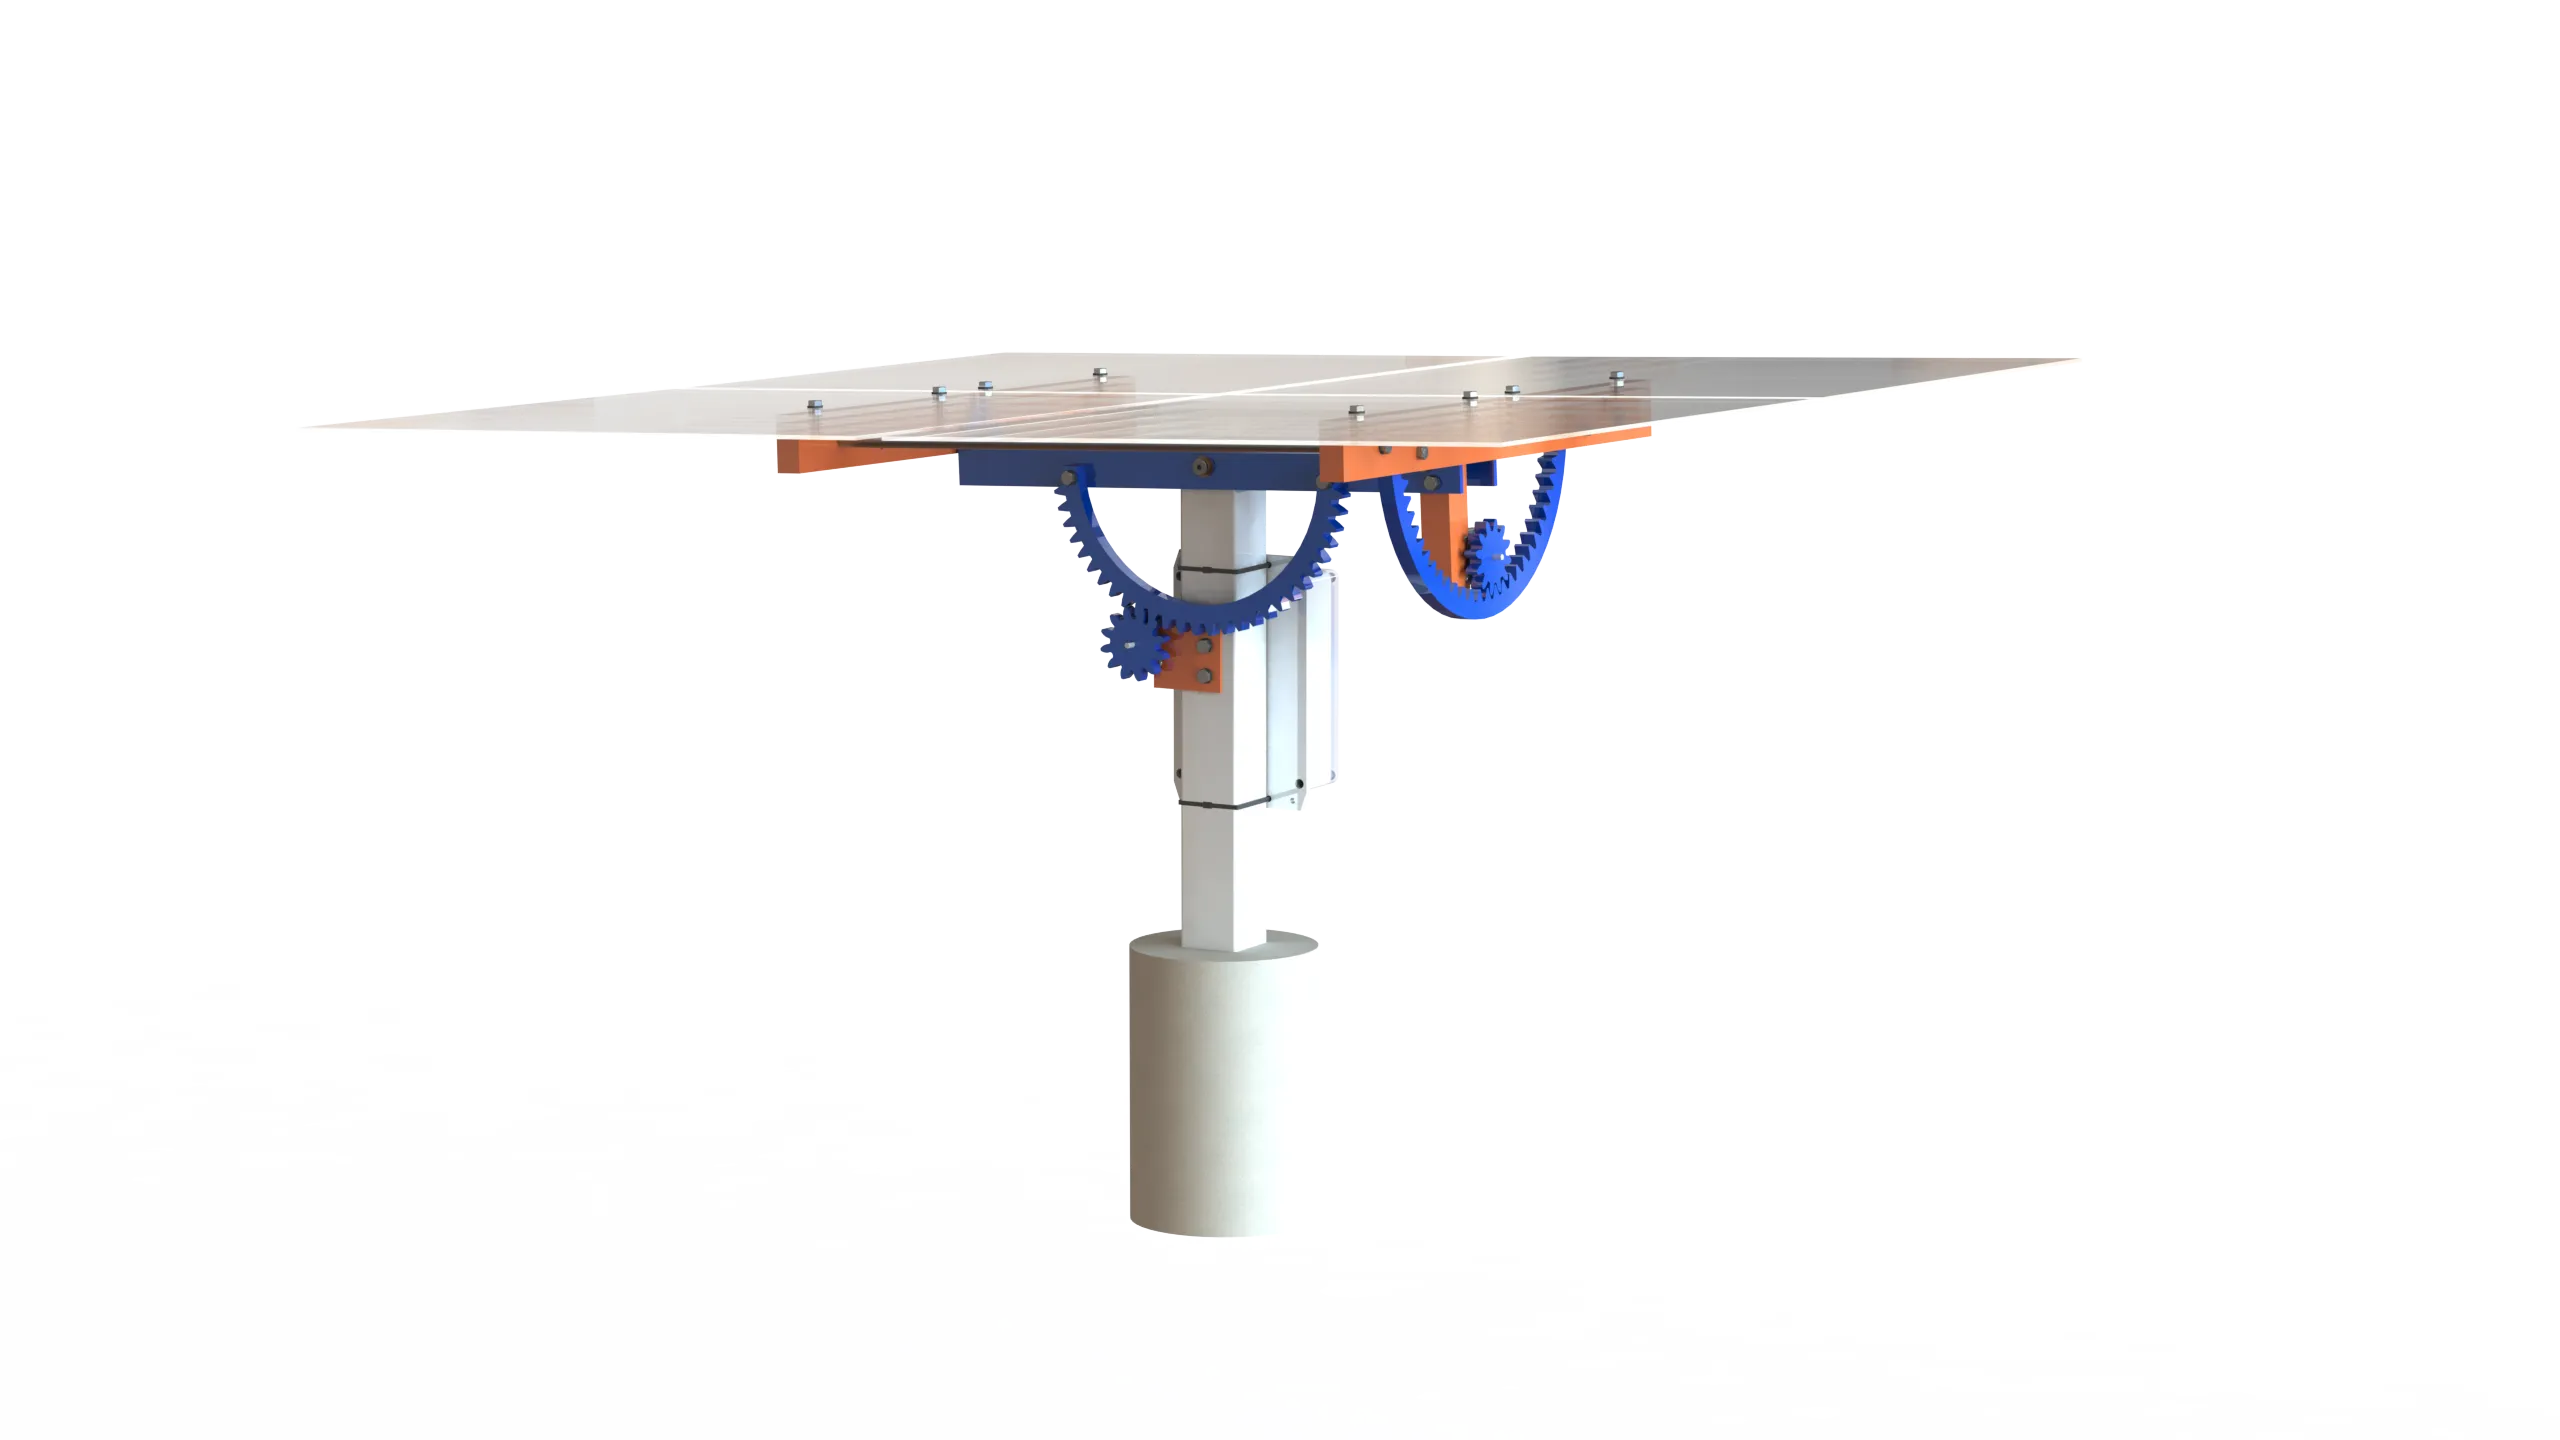 Render of 3D model of a heliostat module